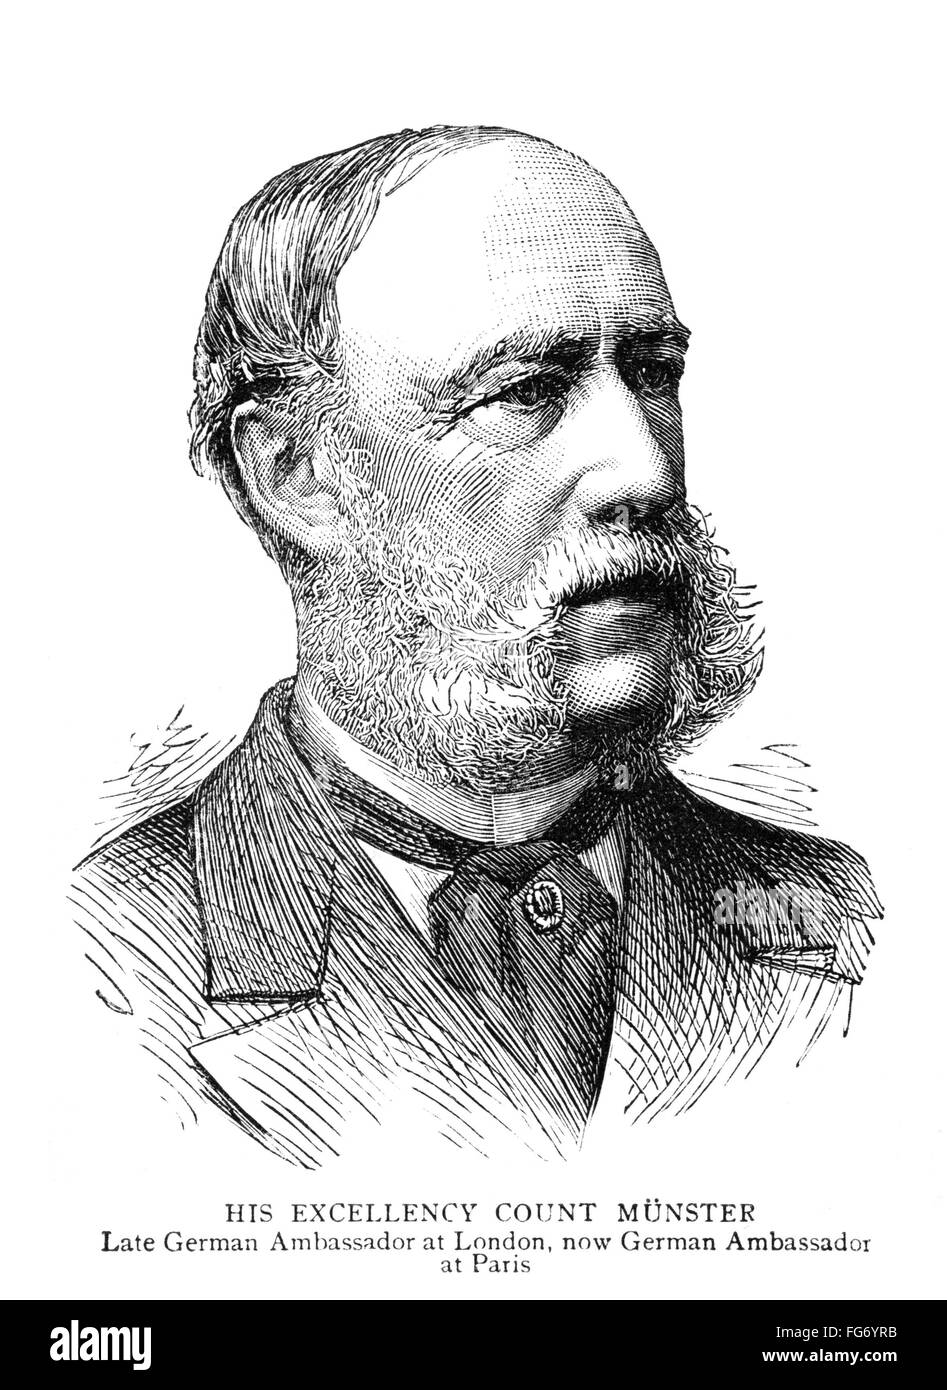 GEORGE HERBERT MUNSTER /nCount George Herbert Mⁿnster (1820-1902). German diplomat. Engraving, English, 1885. Stock Photo